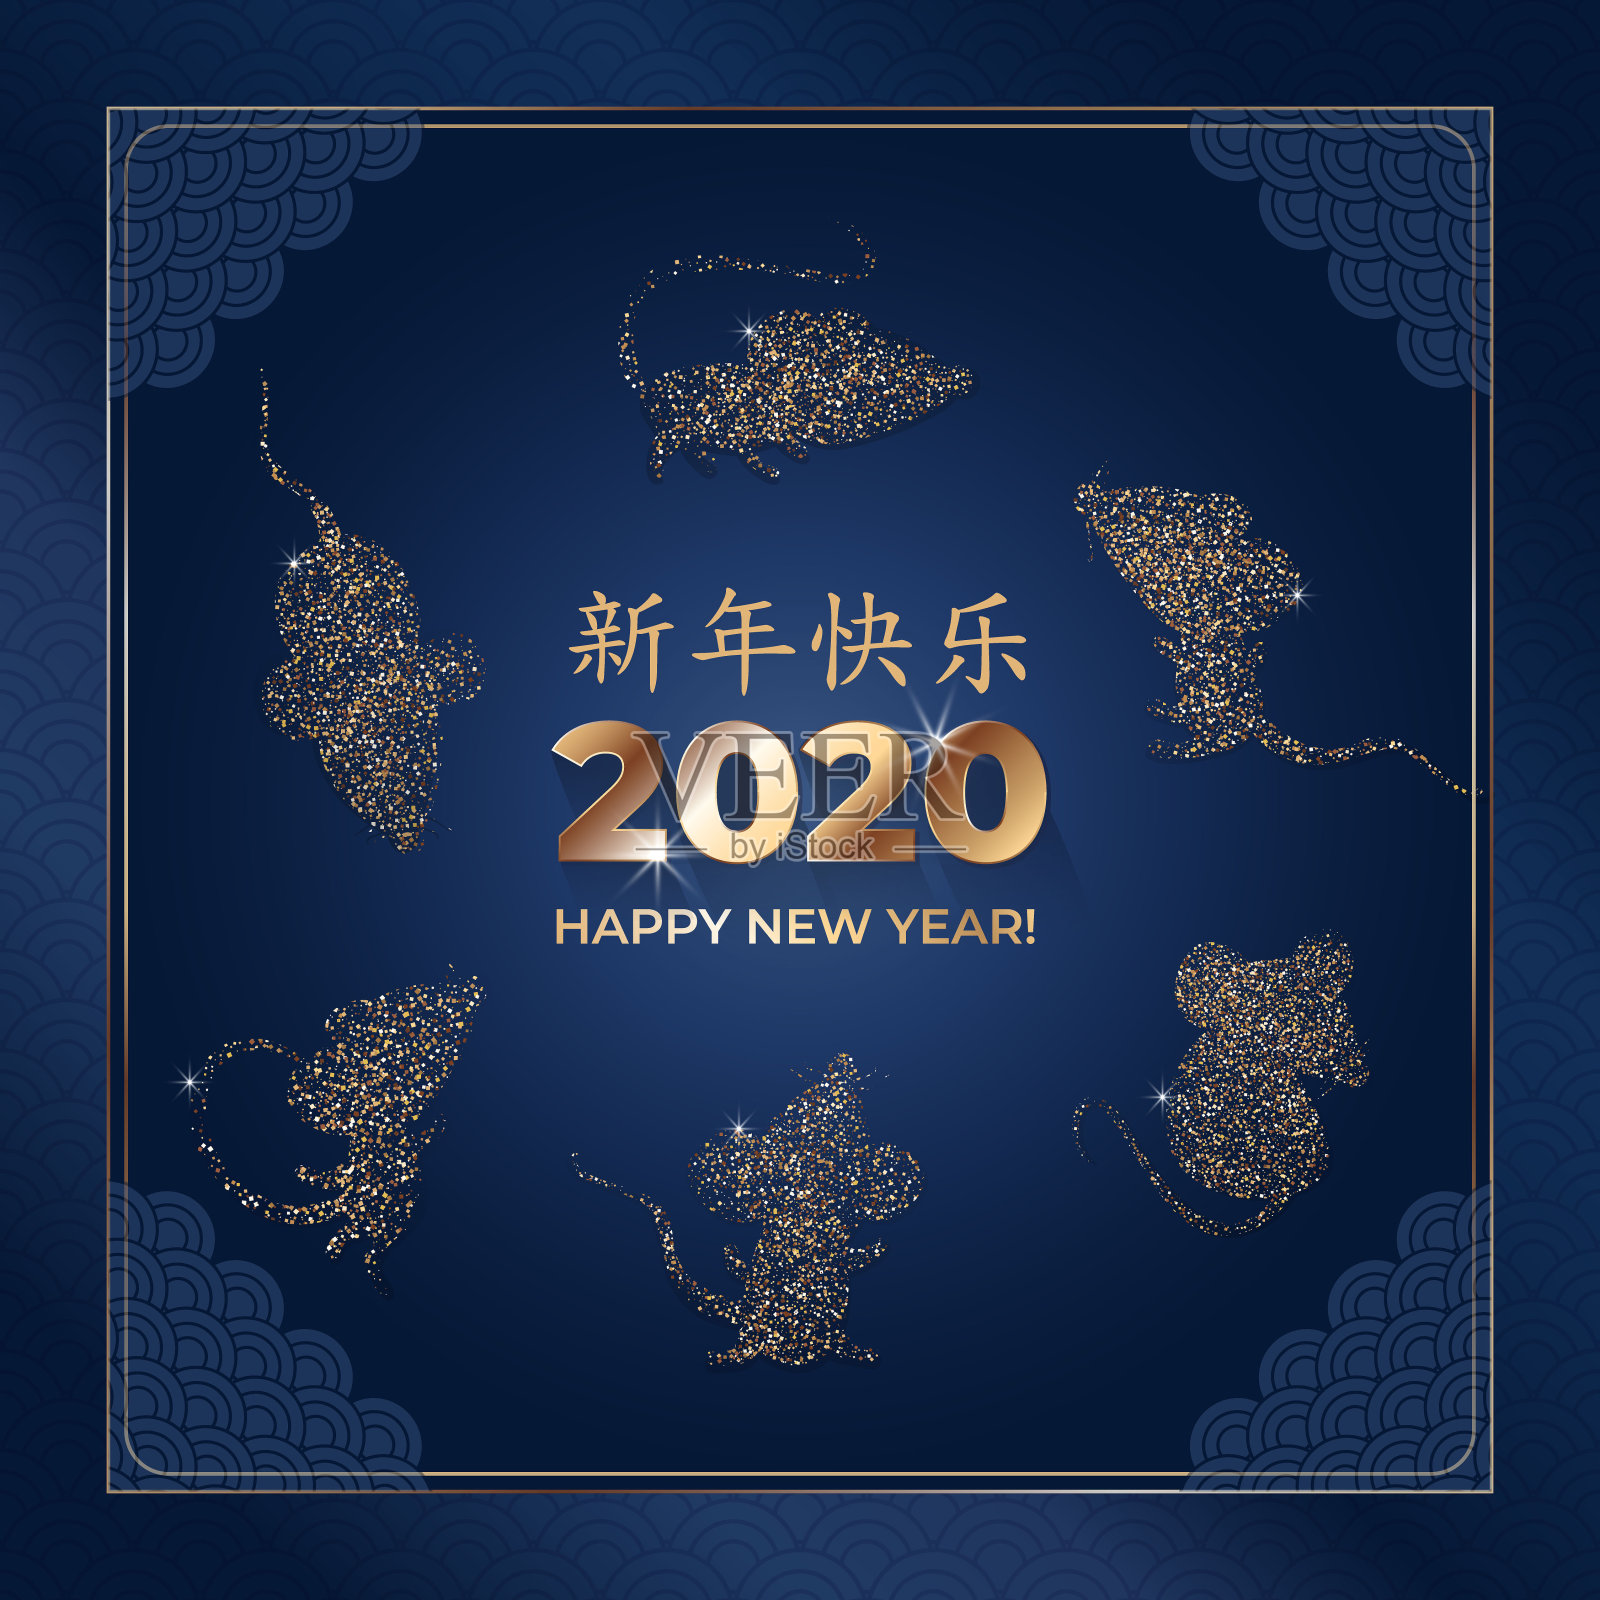 2020年新年快乐。金色闪亮的老鼠剪影，深蓝色的背景是汉字。亚洲模式。中文译成“新年快乐”。矢量插图。设计模板素材